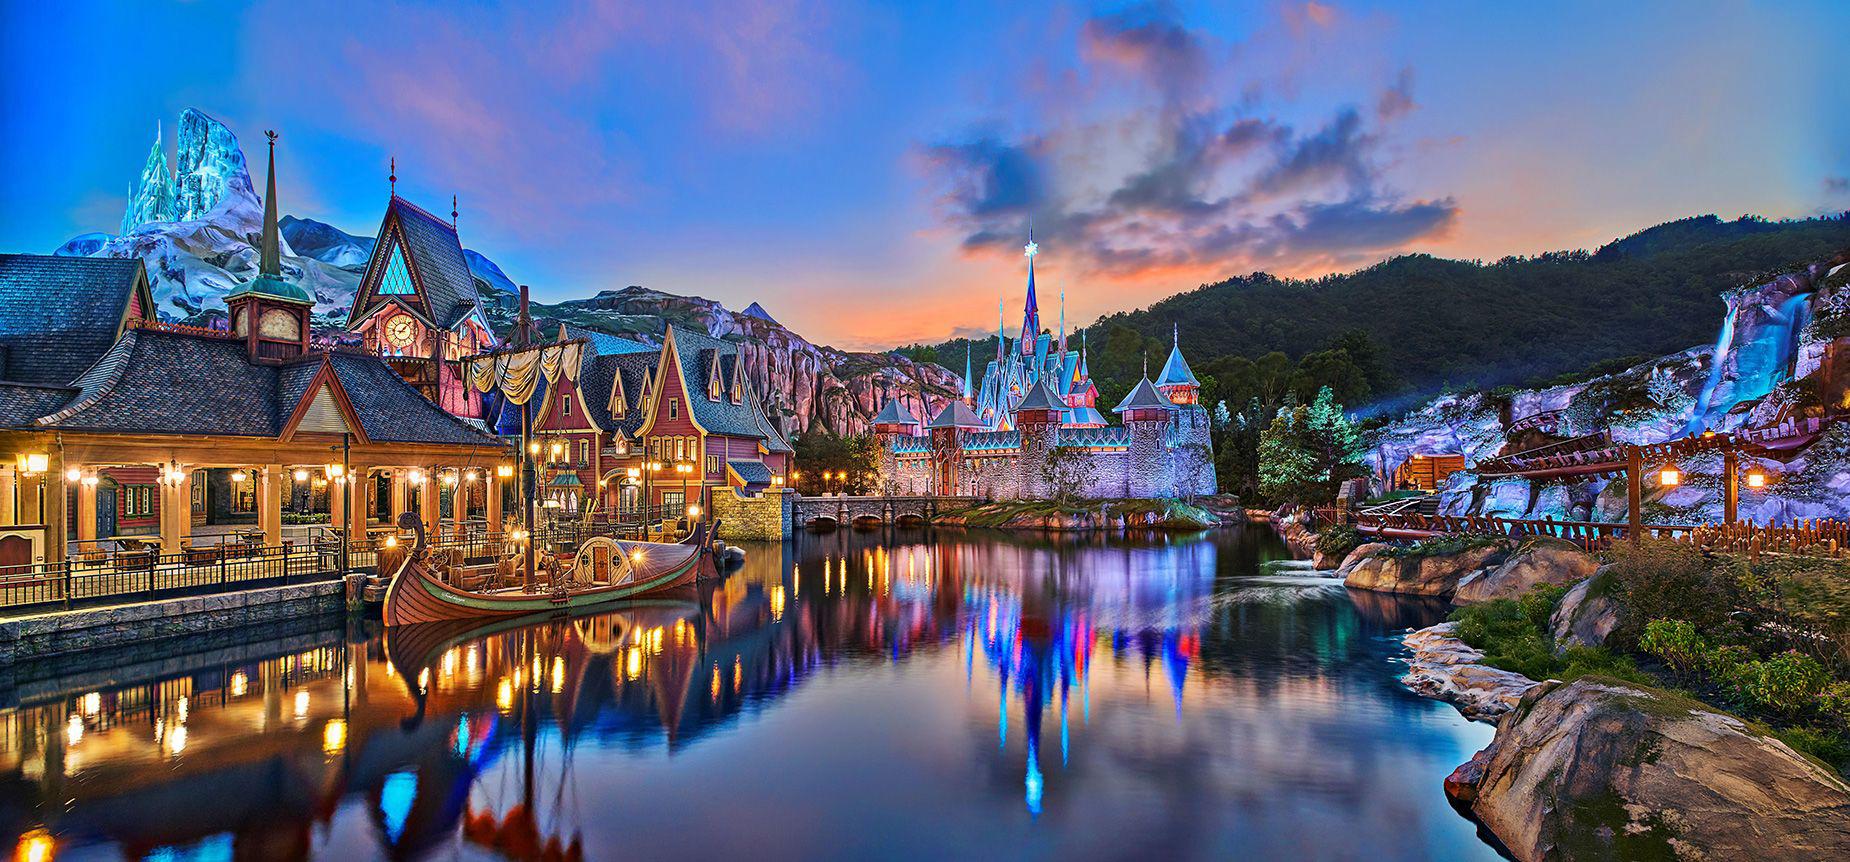 Disneyland Hồng Kông ra mắt công viên chủ đề phim Frozen đẹp như cổ tích - 1